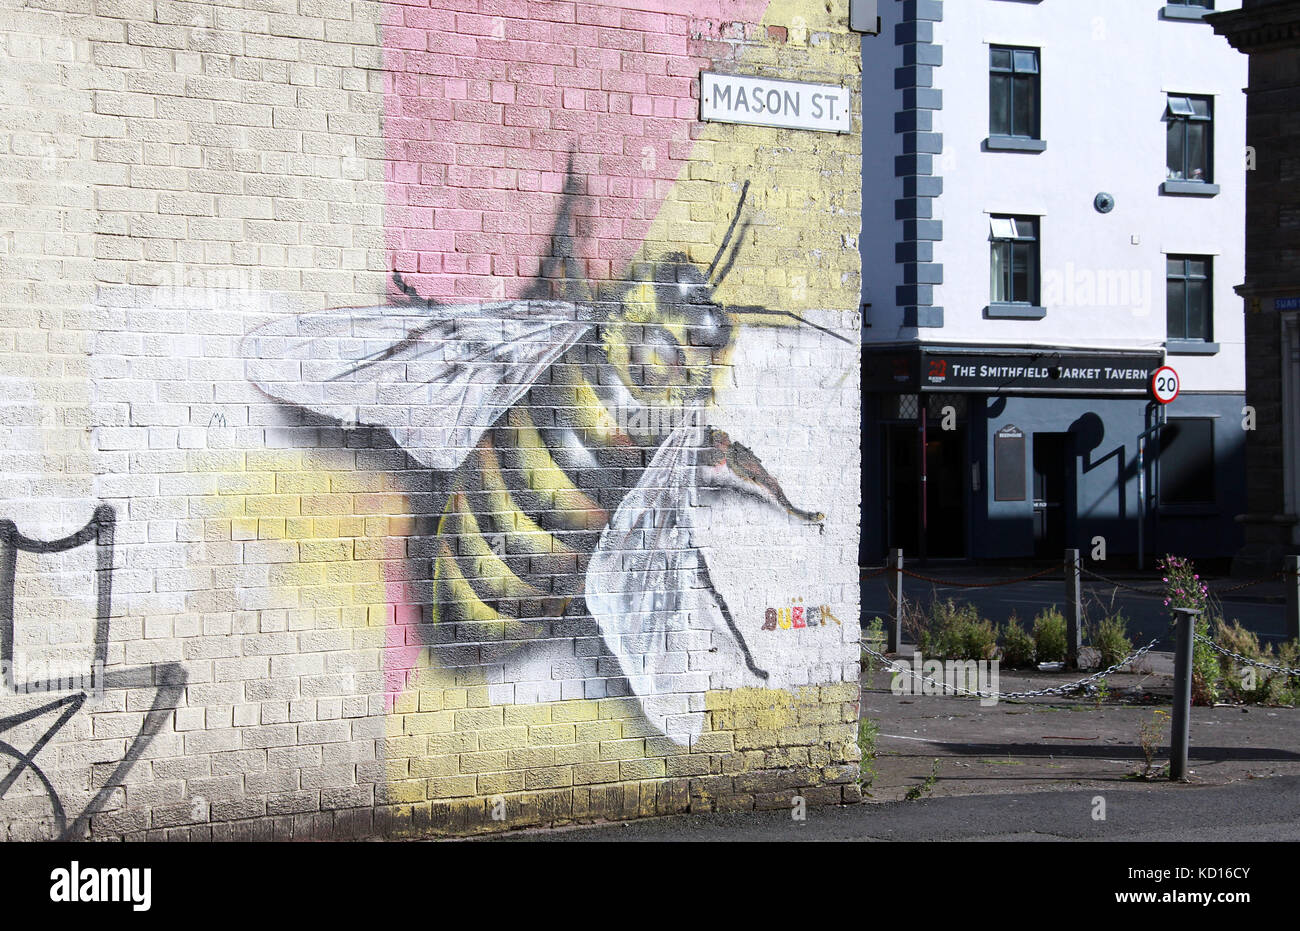 Mason Street avec ouvrière symbolique l'art de rue dans le quartier Nord de Manchester Banque D'Images